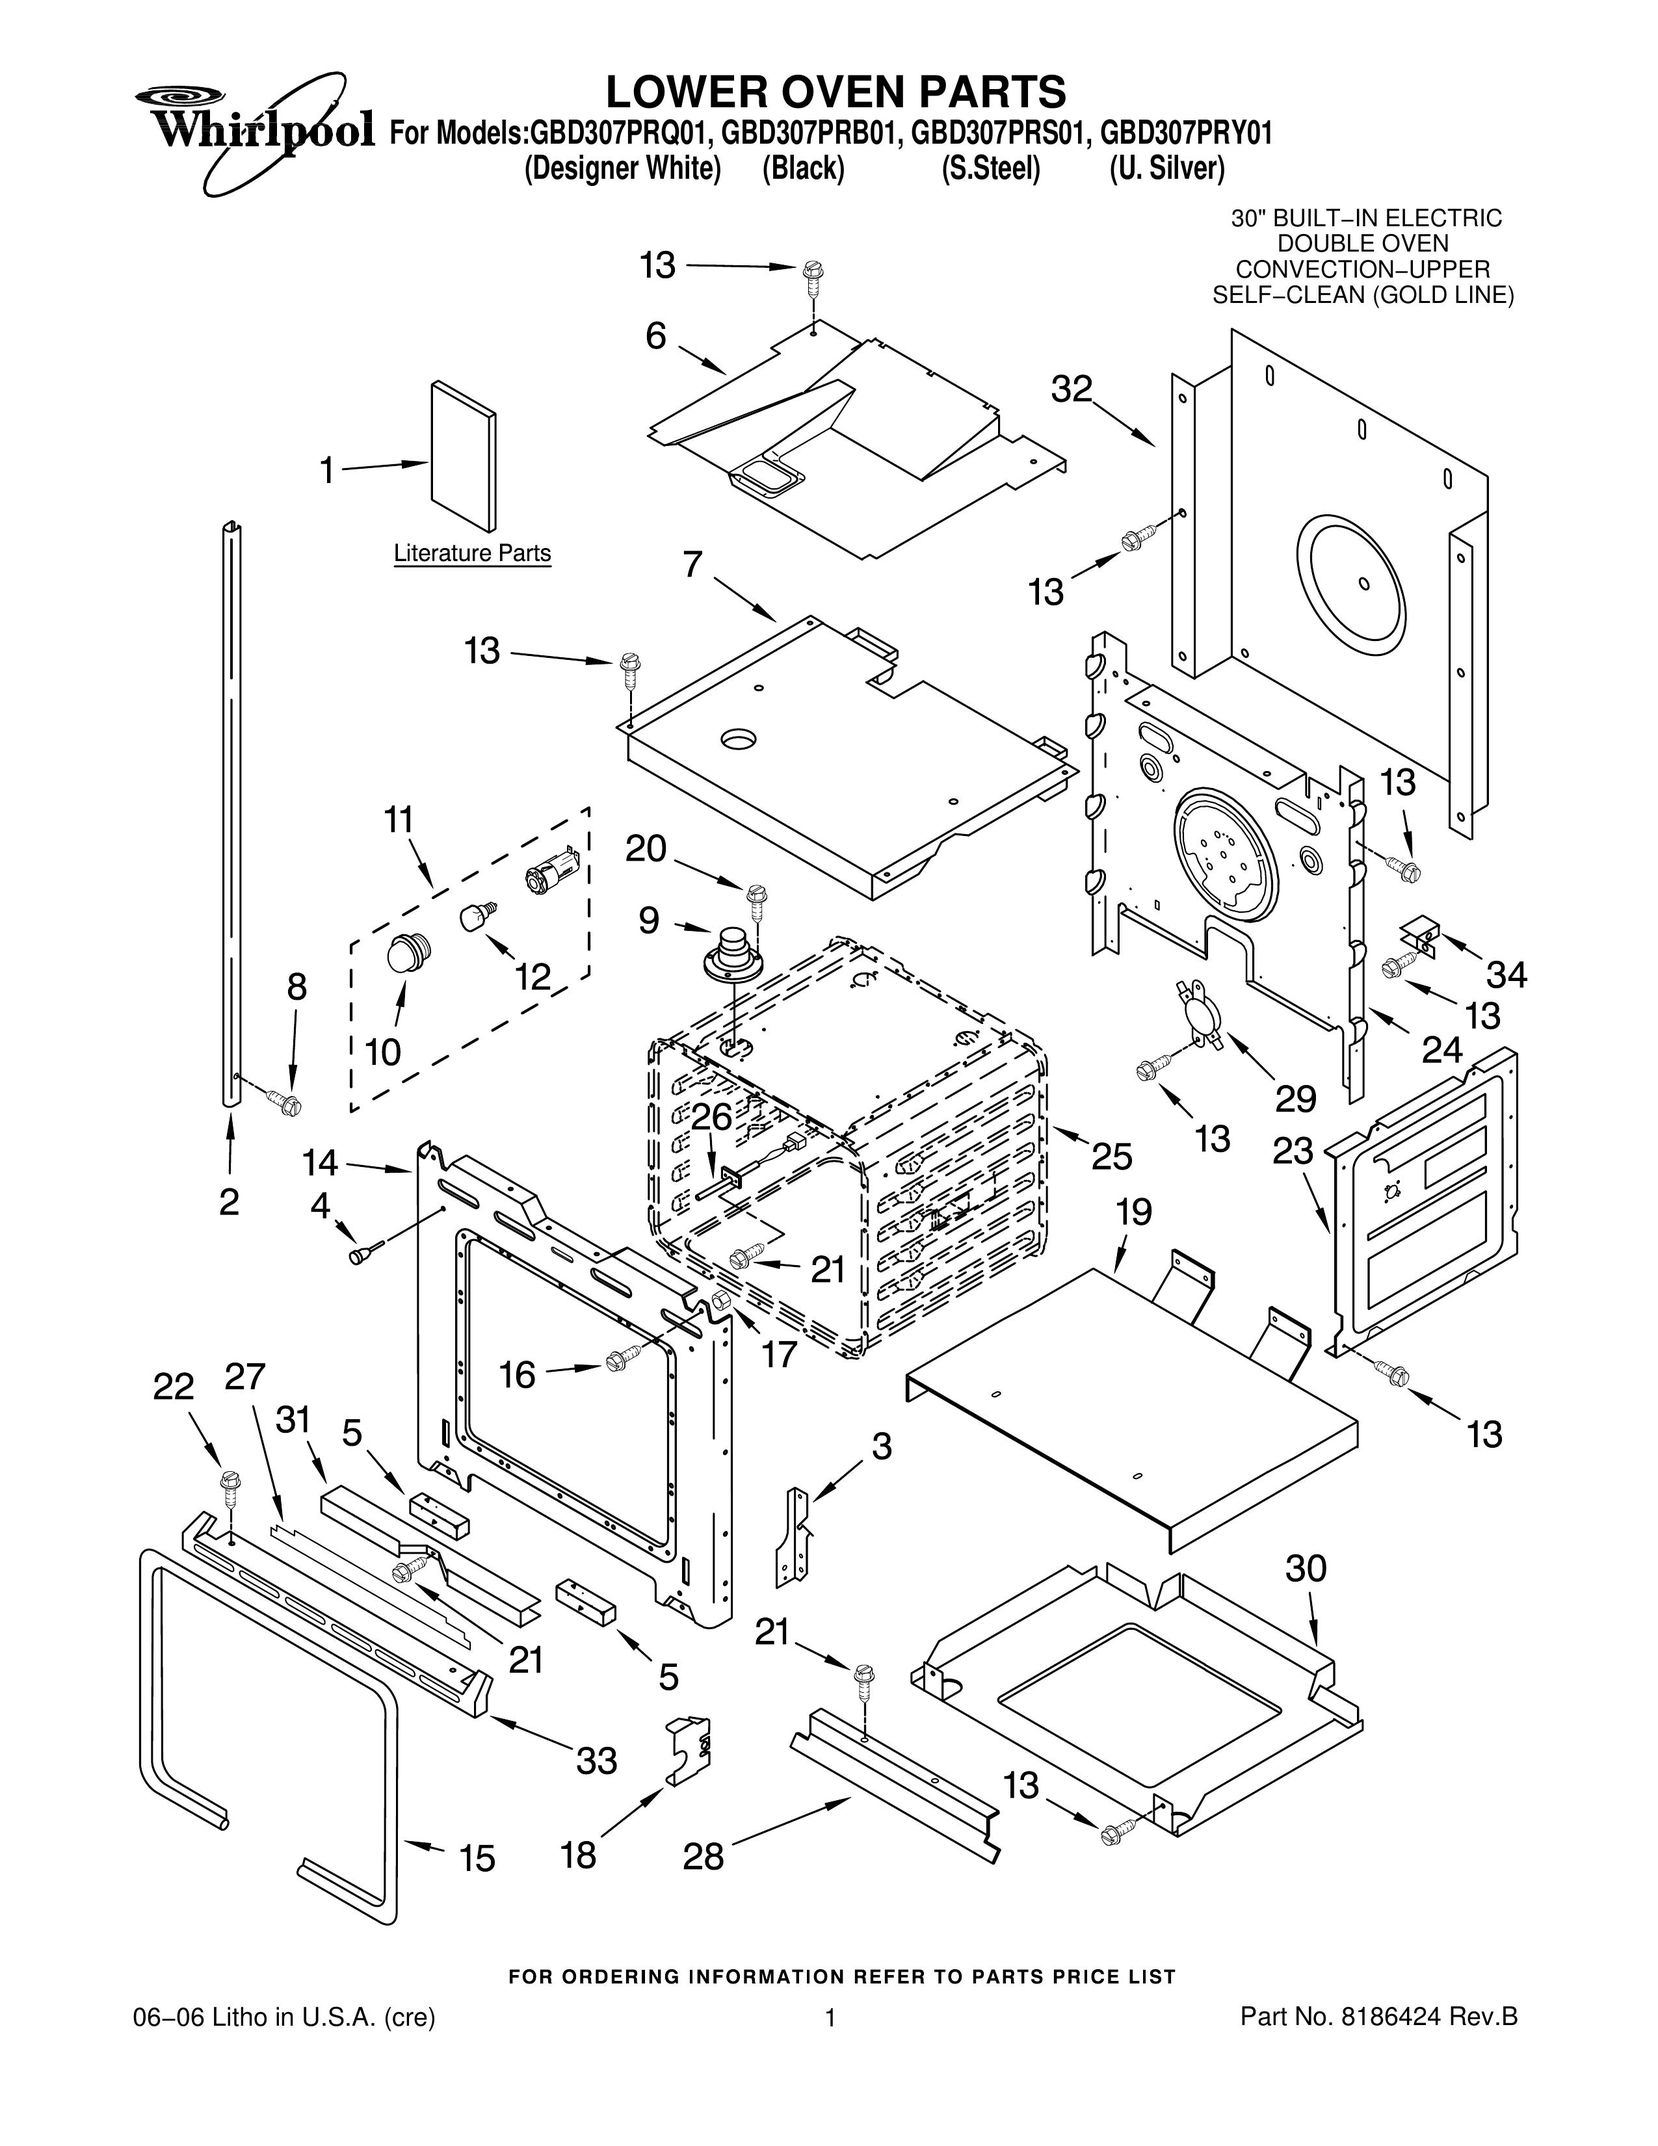 Whirlpool GBD307PRS01 Oven User Manual